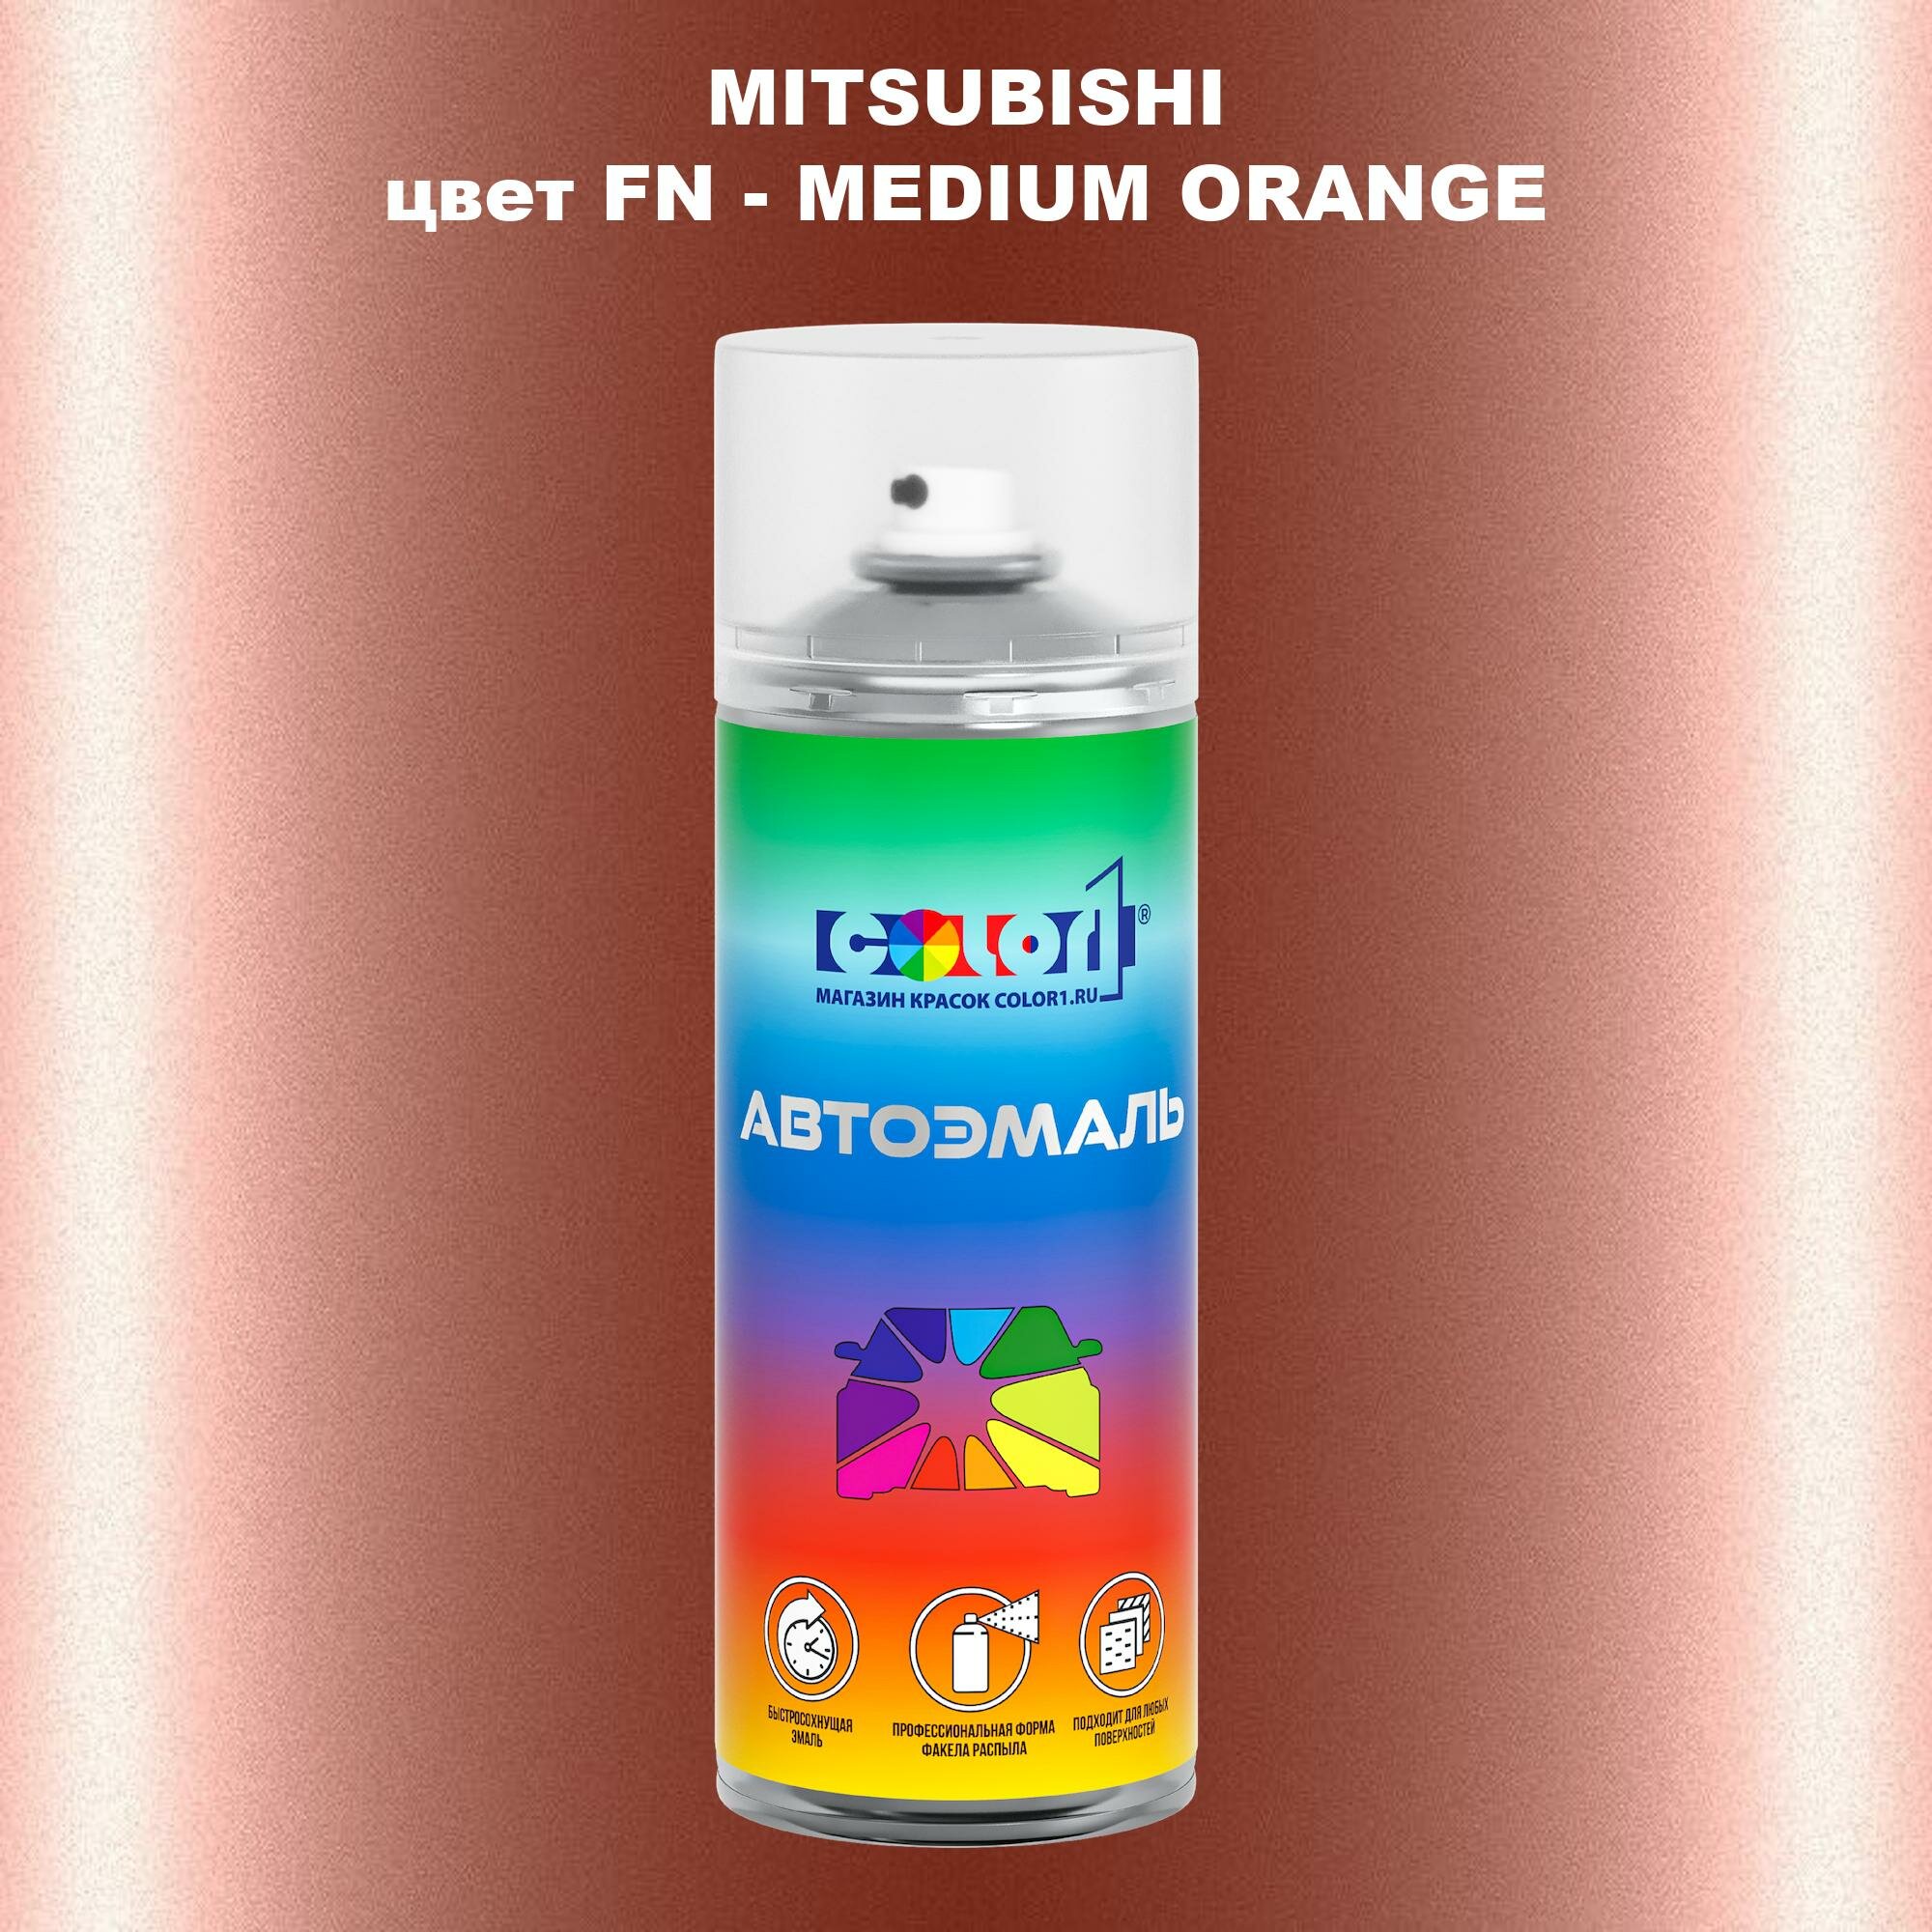 Аэрозольная краска COLOR1 для MITSUBISHI, цвет FN - MEDIUM ORANGE